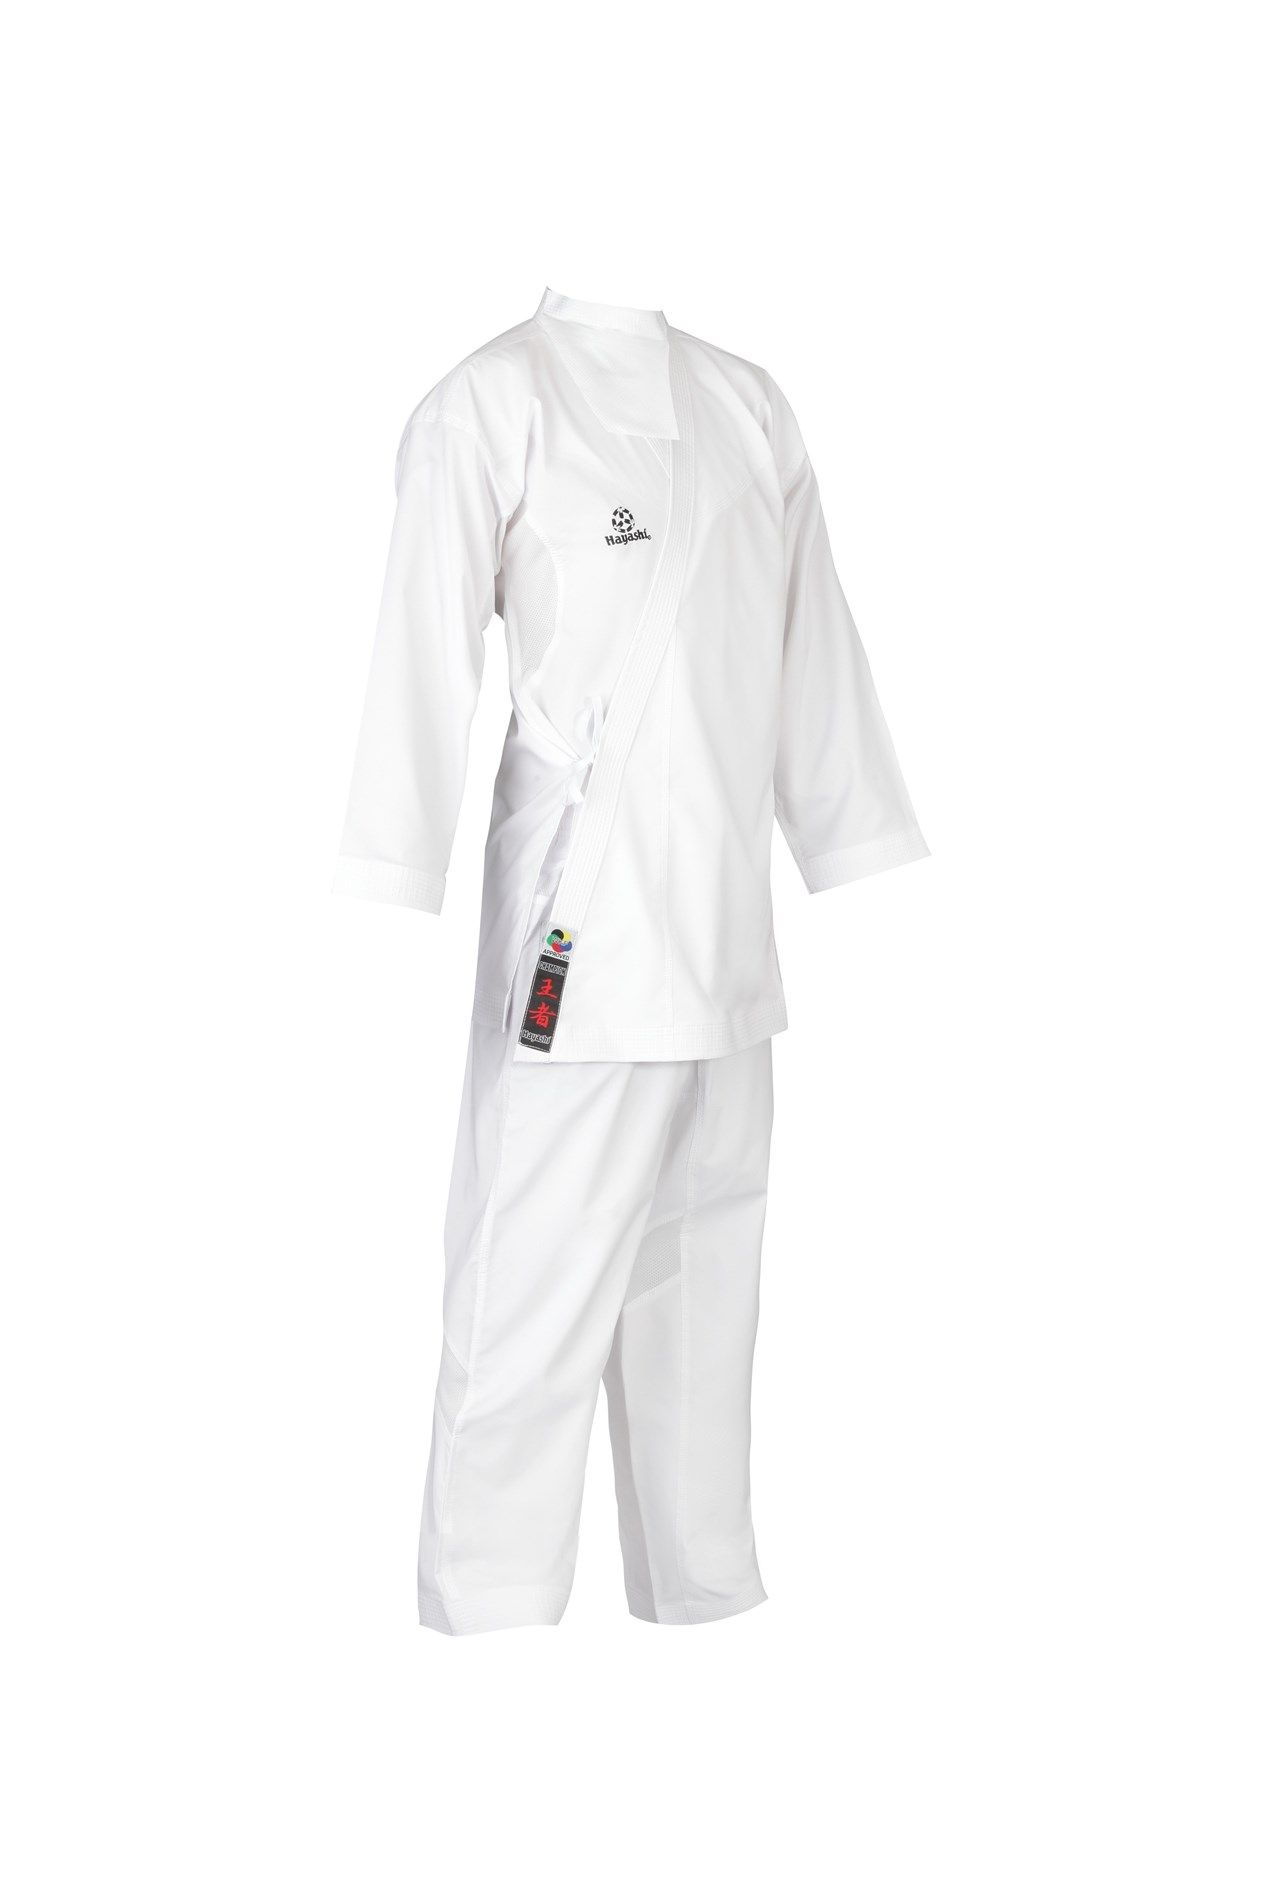 Hayashi Karatepak “Champion Flexz” (WKF approved) Wit - rood